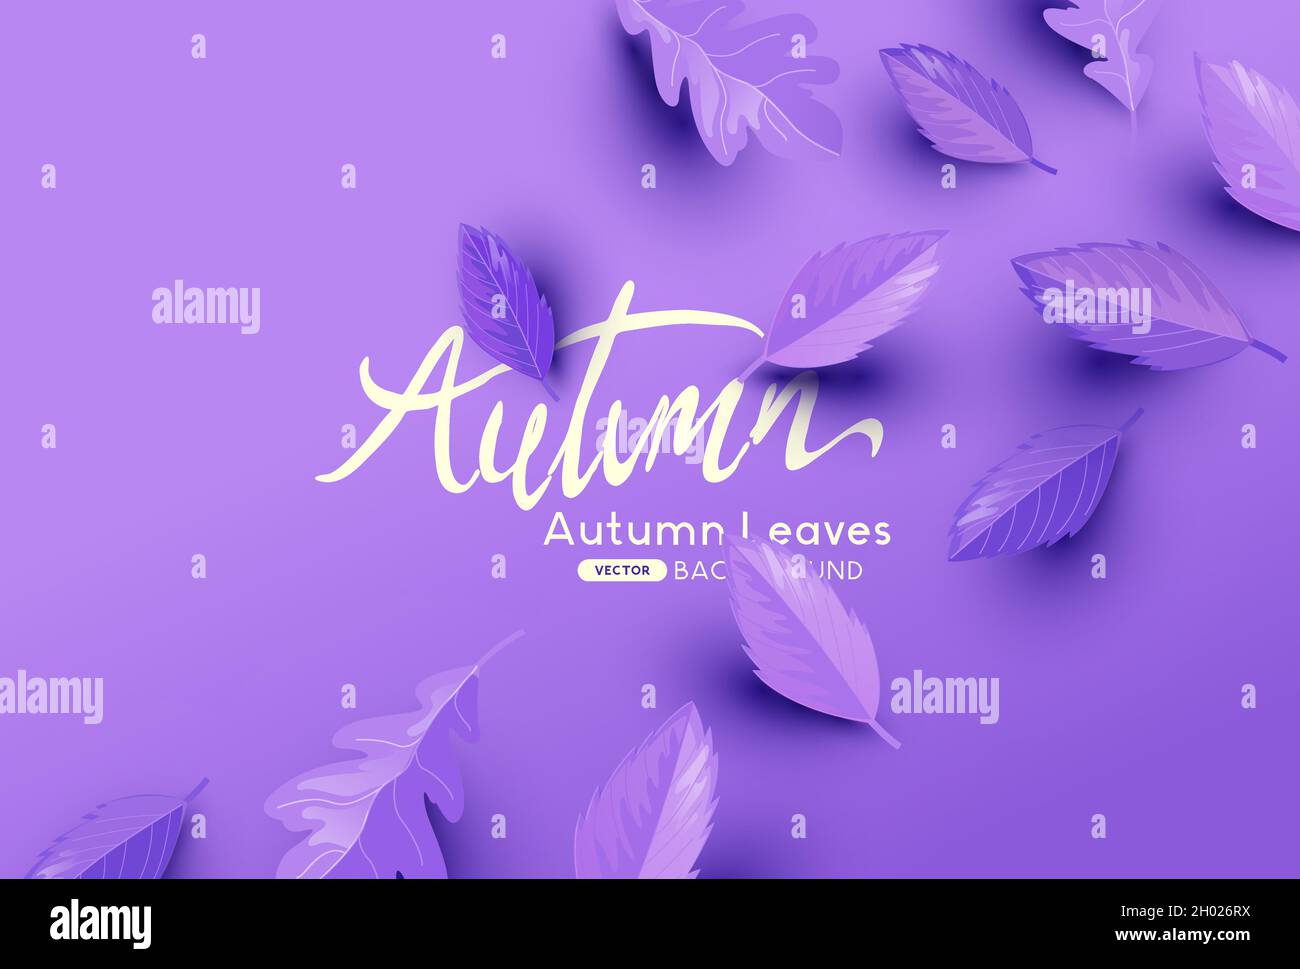 Der purpurrote Herbst hinterlässt einen Hintergrund mit Platz für Kopien. Vektorgrafik Herbst Stock Vektor